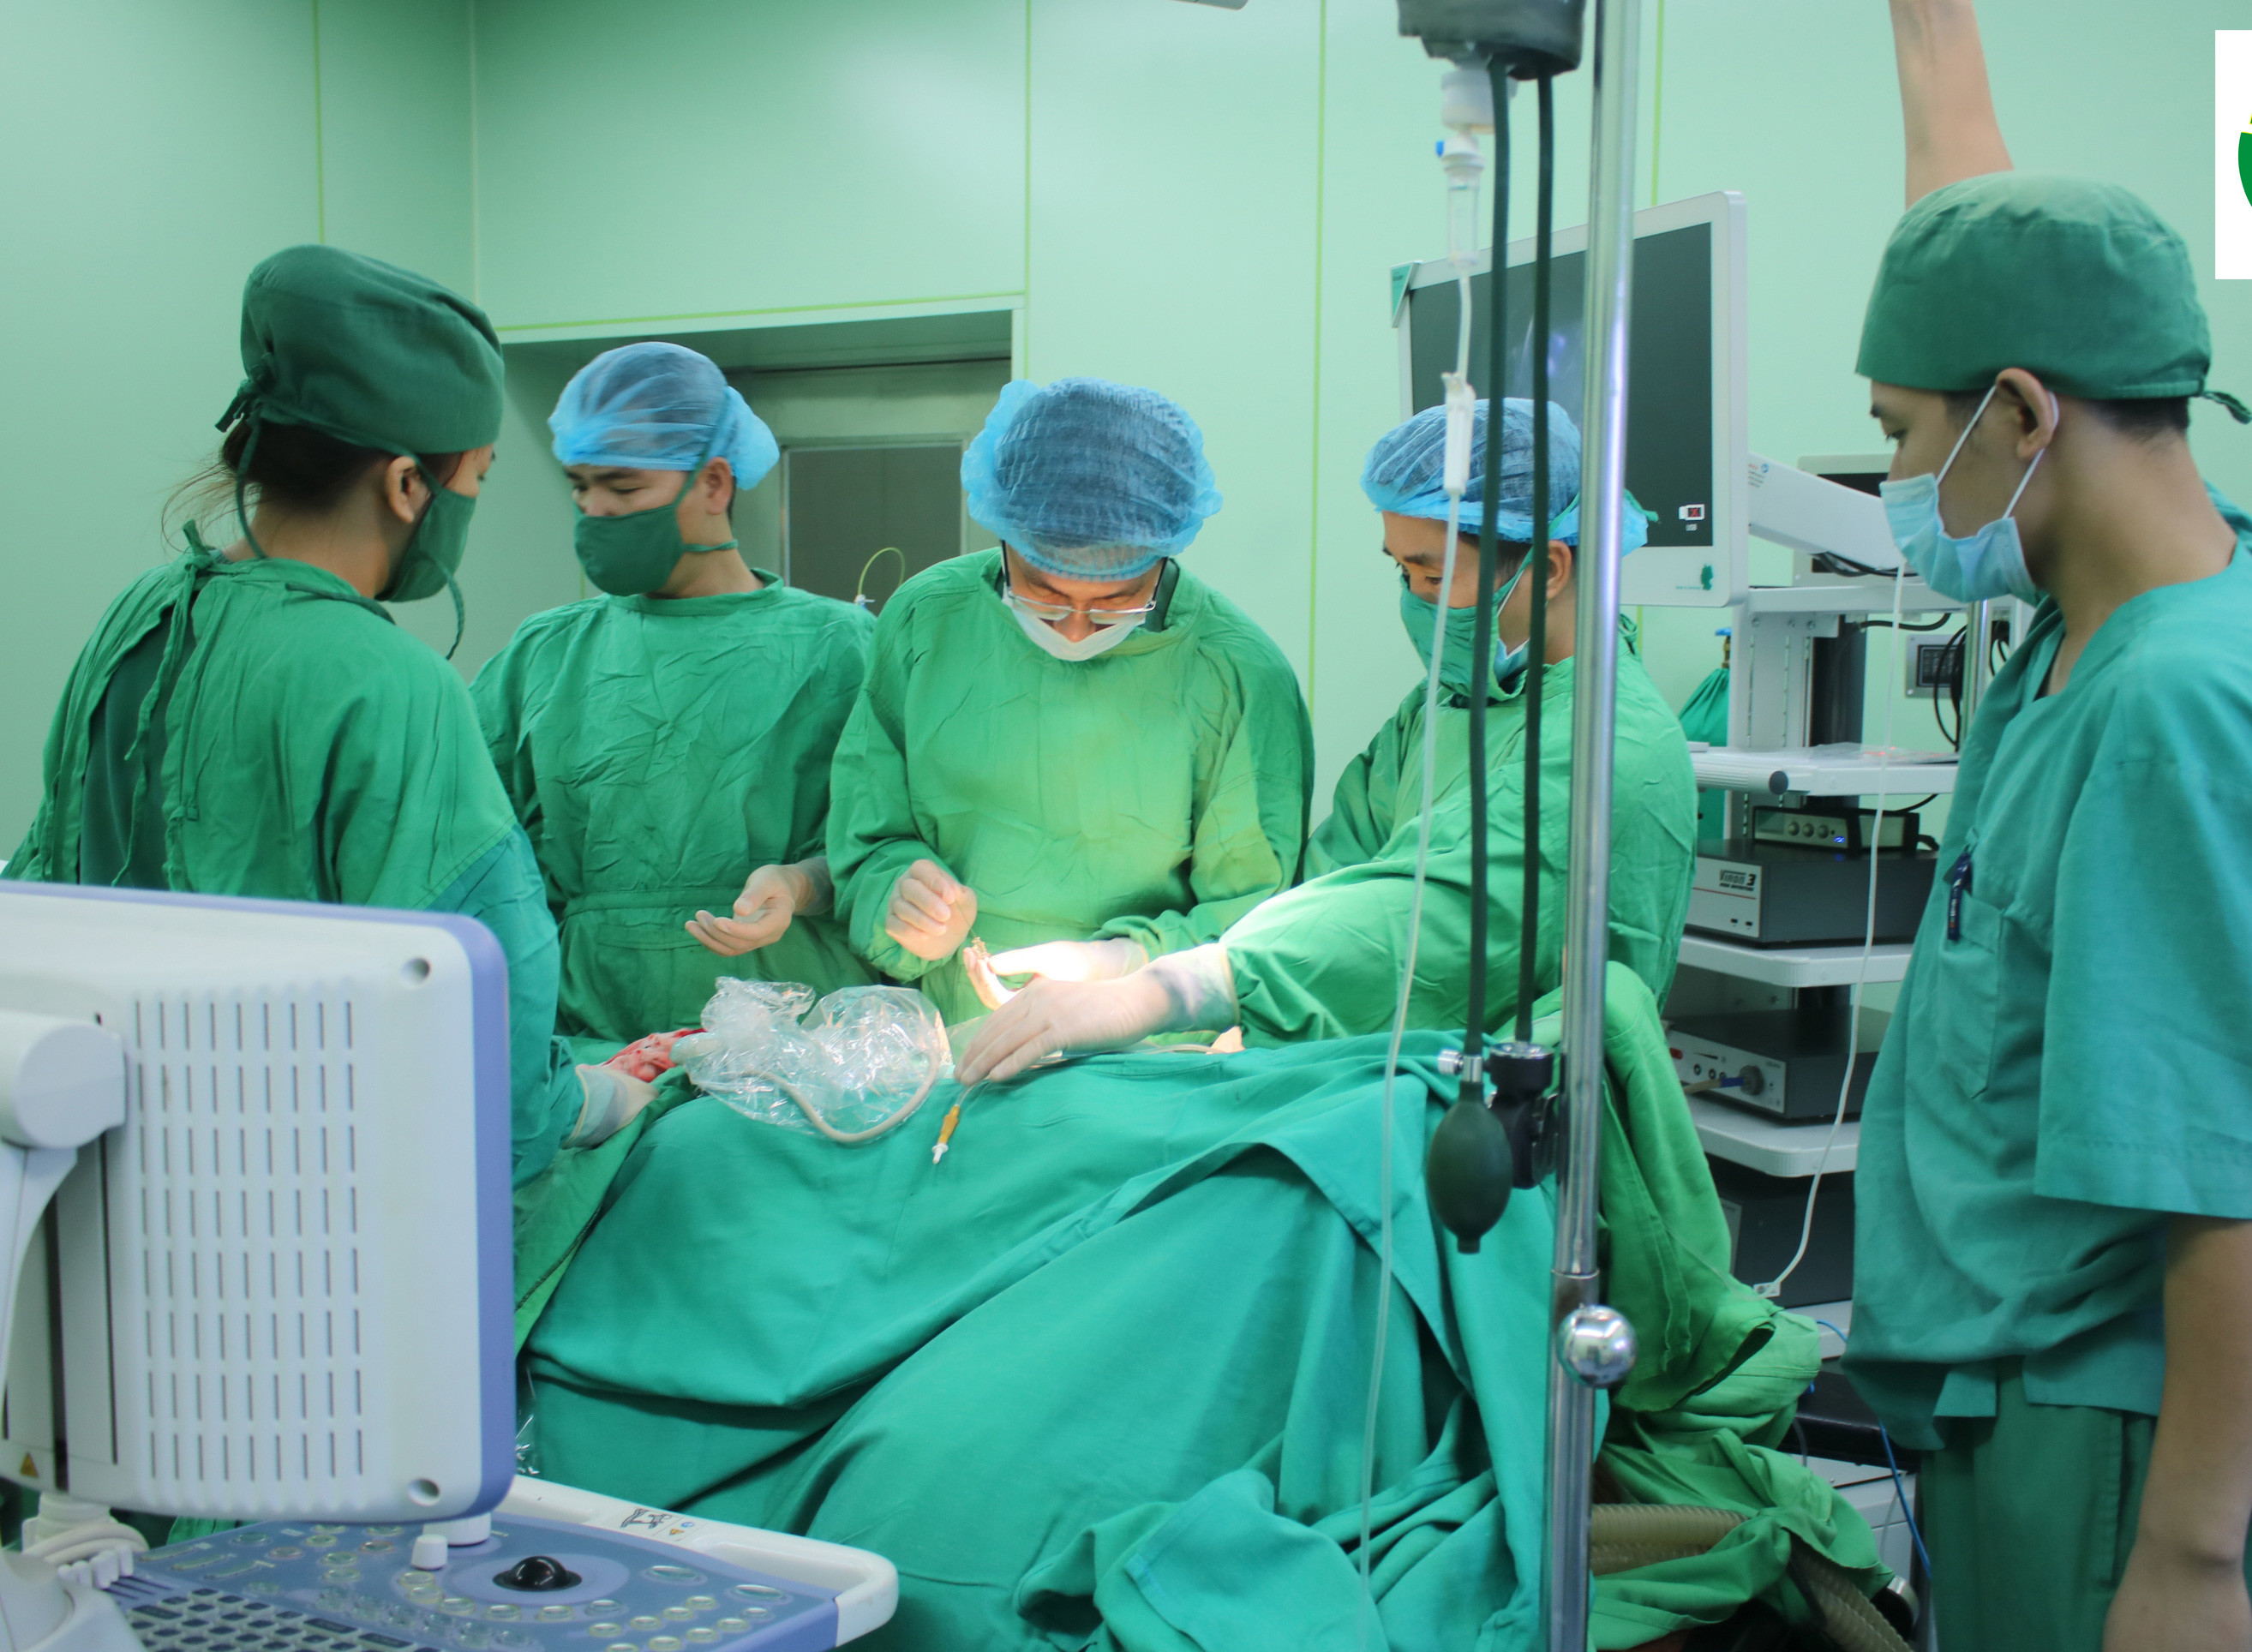 Phẫu thuật nội soi lấy sỏi thận qua da bằng đường hầm nhỏ tại Bệnh viện Đa khoa thành phố Vinh. Ảnh: Mai Hoa